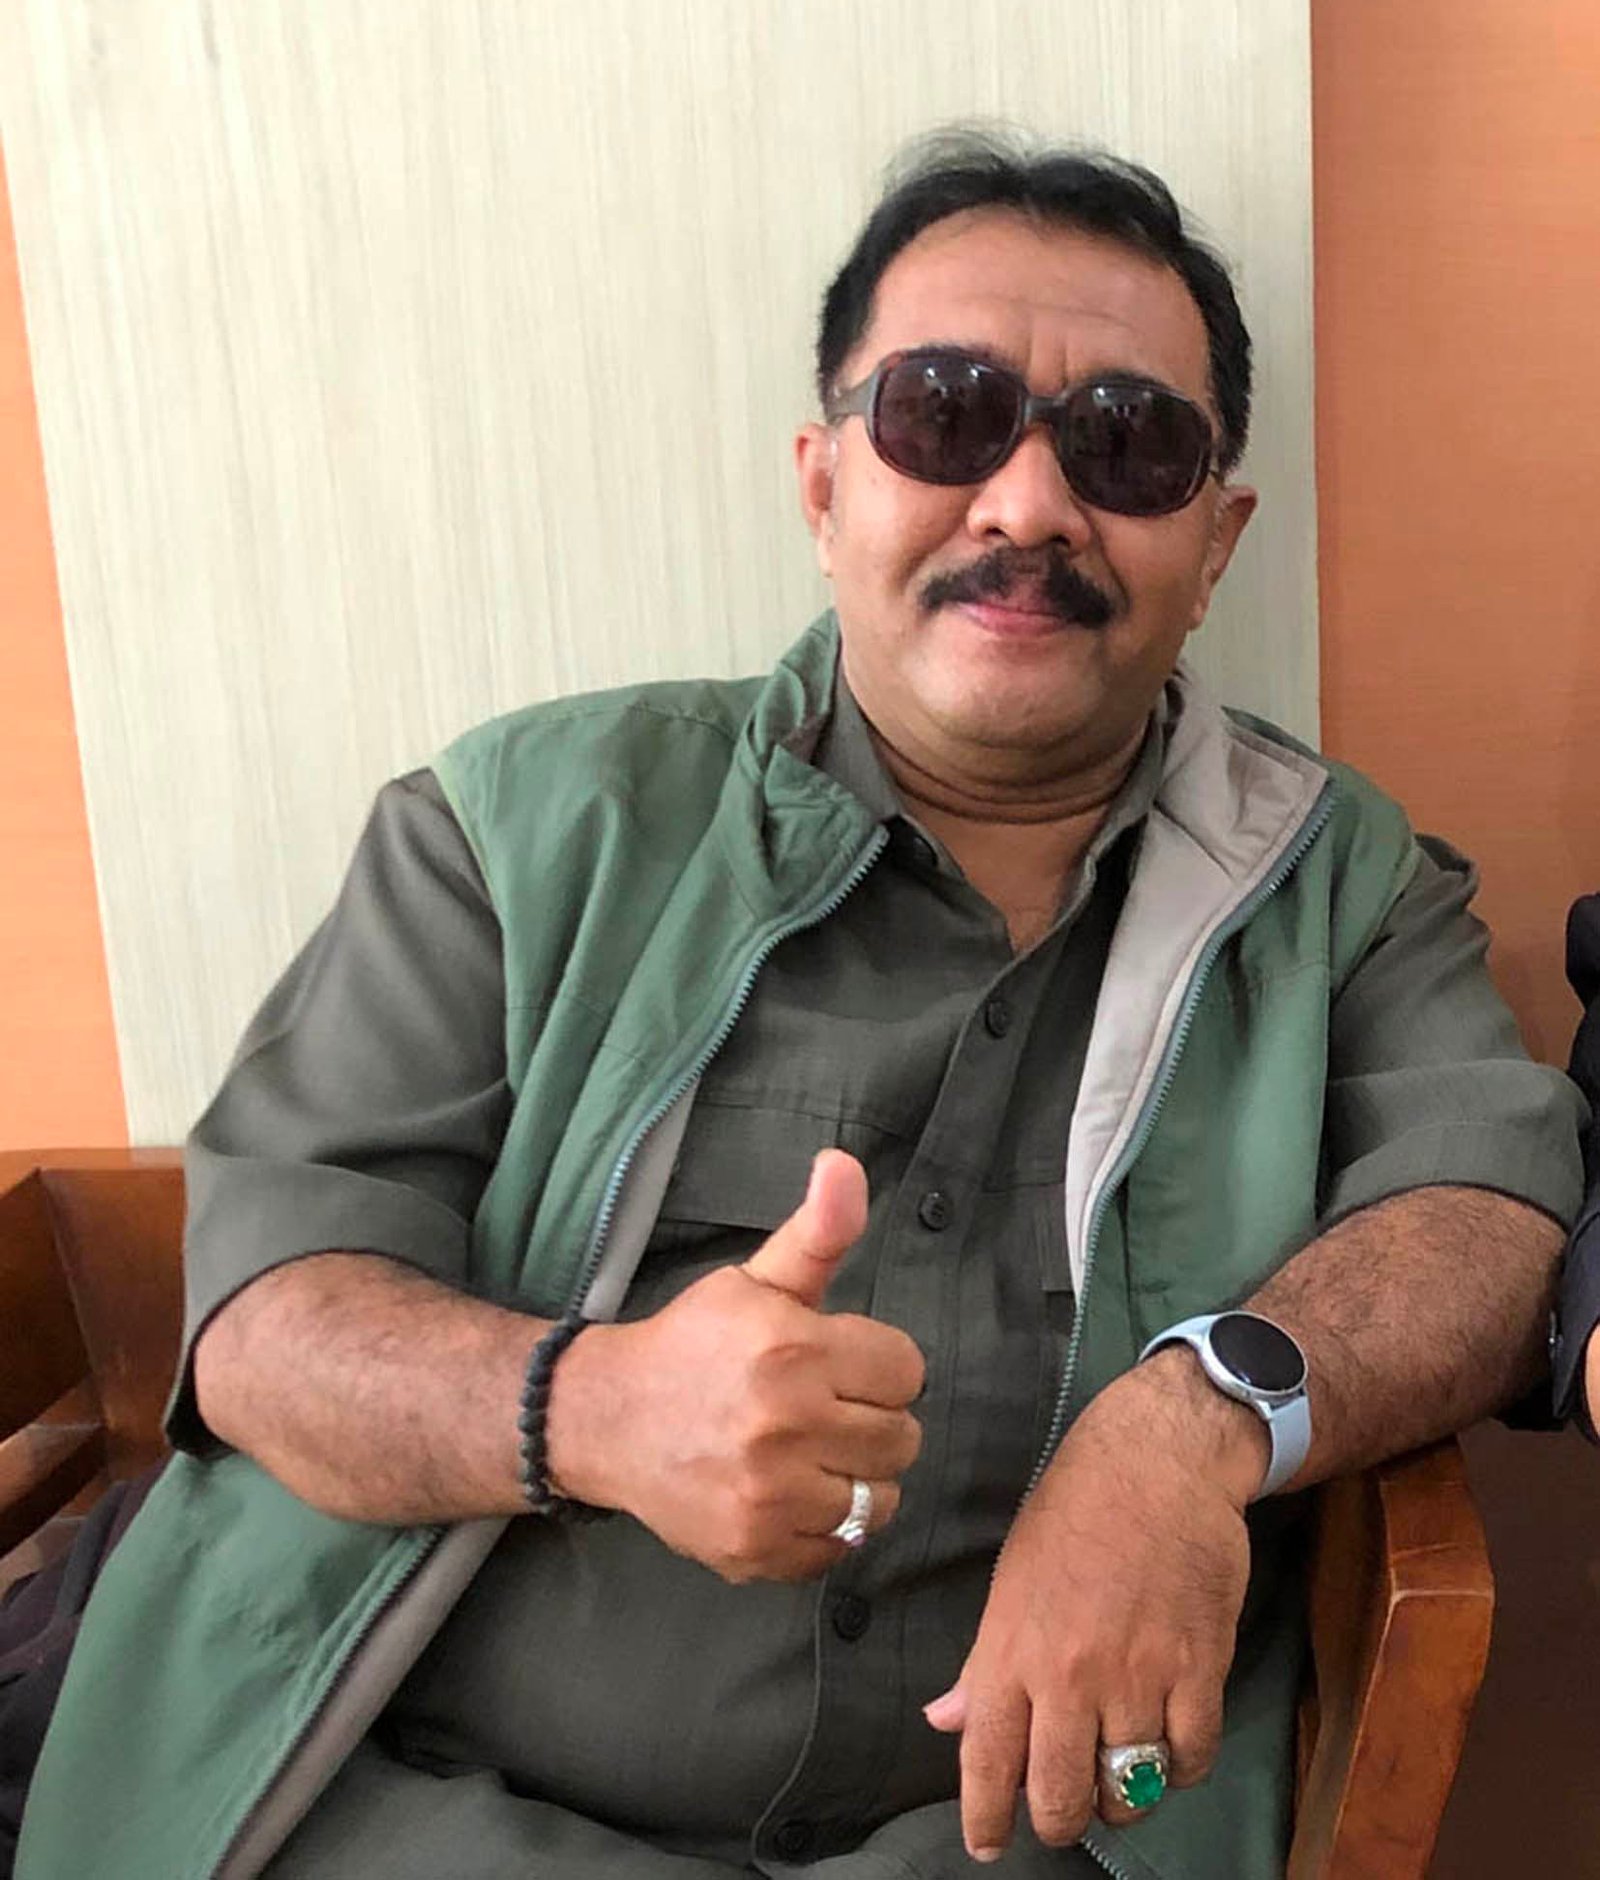 EDUKASI. Anggota DPRD Kota Magelang dari Partai Hanura meminta Satgas Covid-19 gencar mengedukasi pasien isoman agar kondisi mereka tak semakin memburuk. (foto : wiwid arif/magelang ekspres)